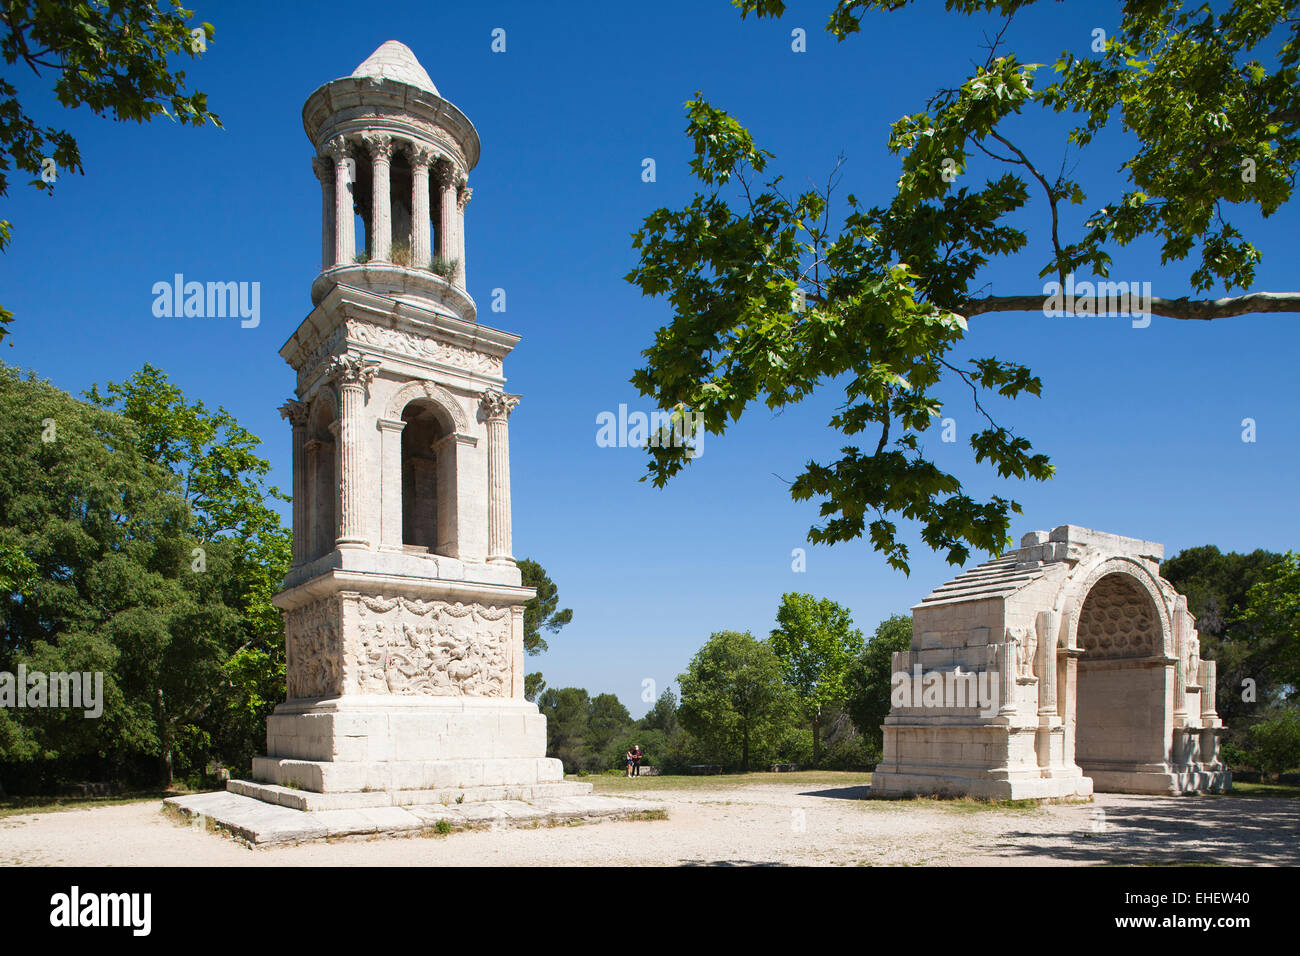 mausoleum and triumphal arch, glanum archaeological site, saint-remy de provence, les alpilles area, provence, france, europe Stock Photo